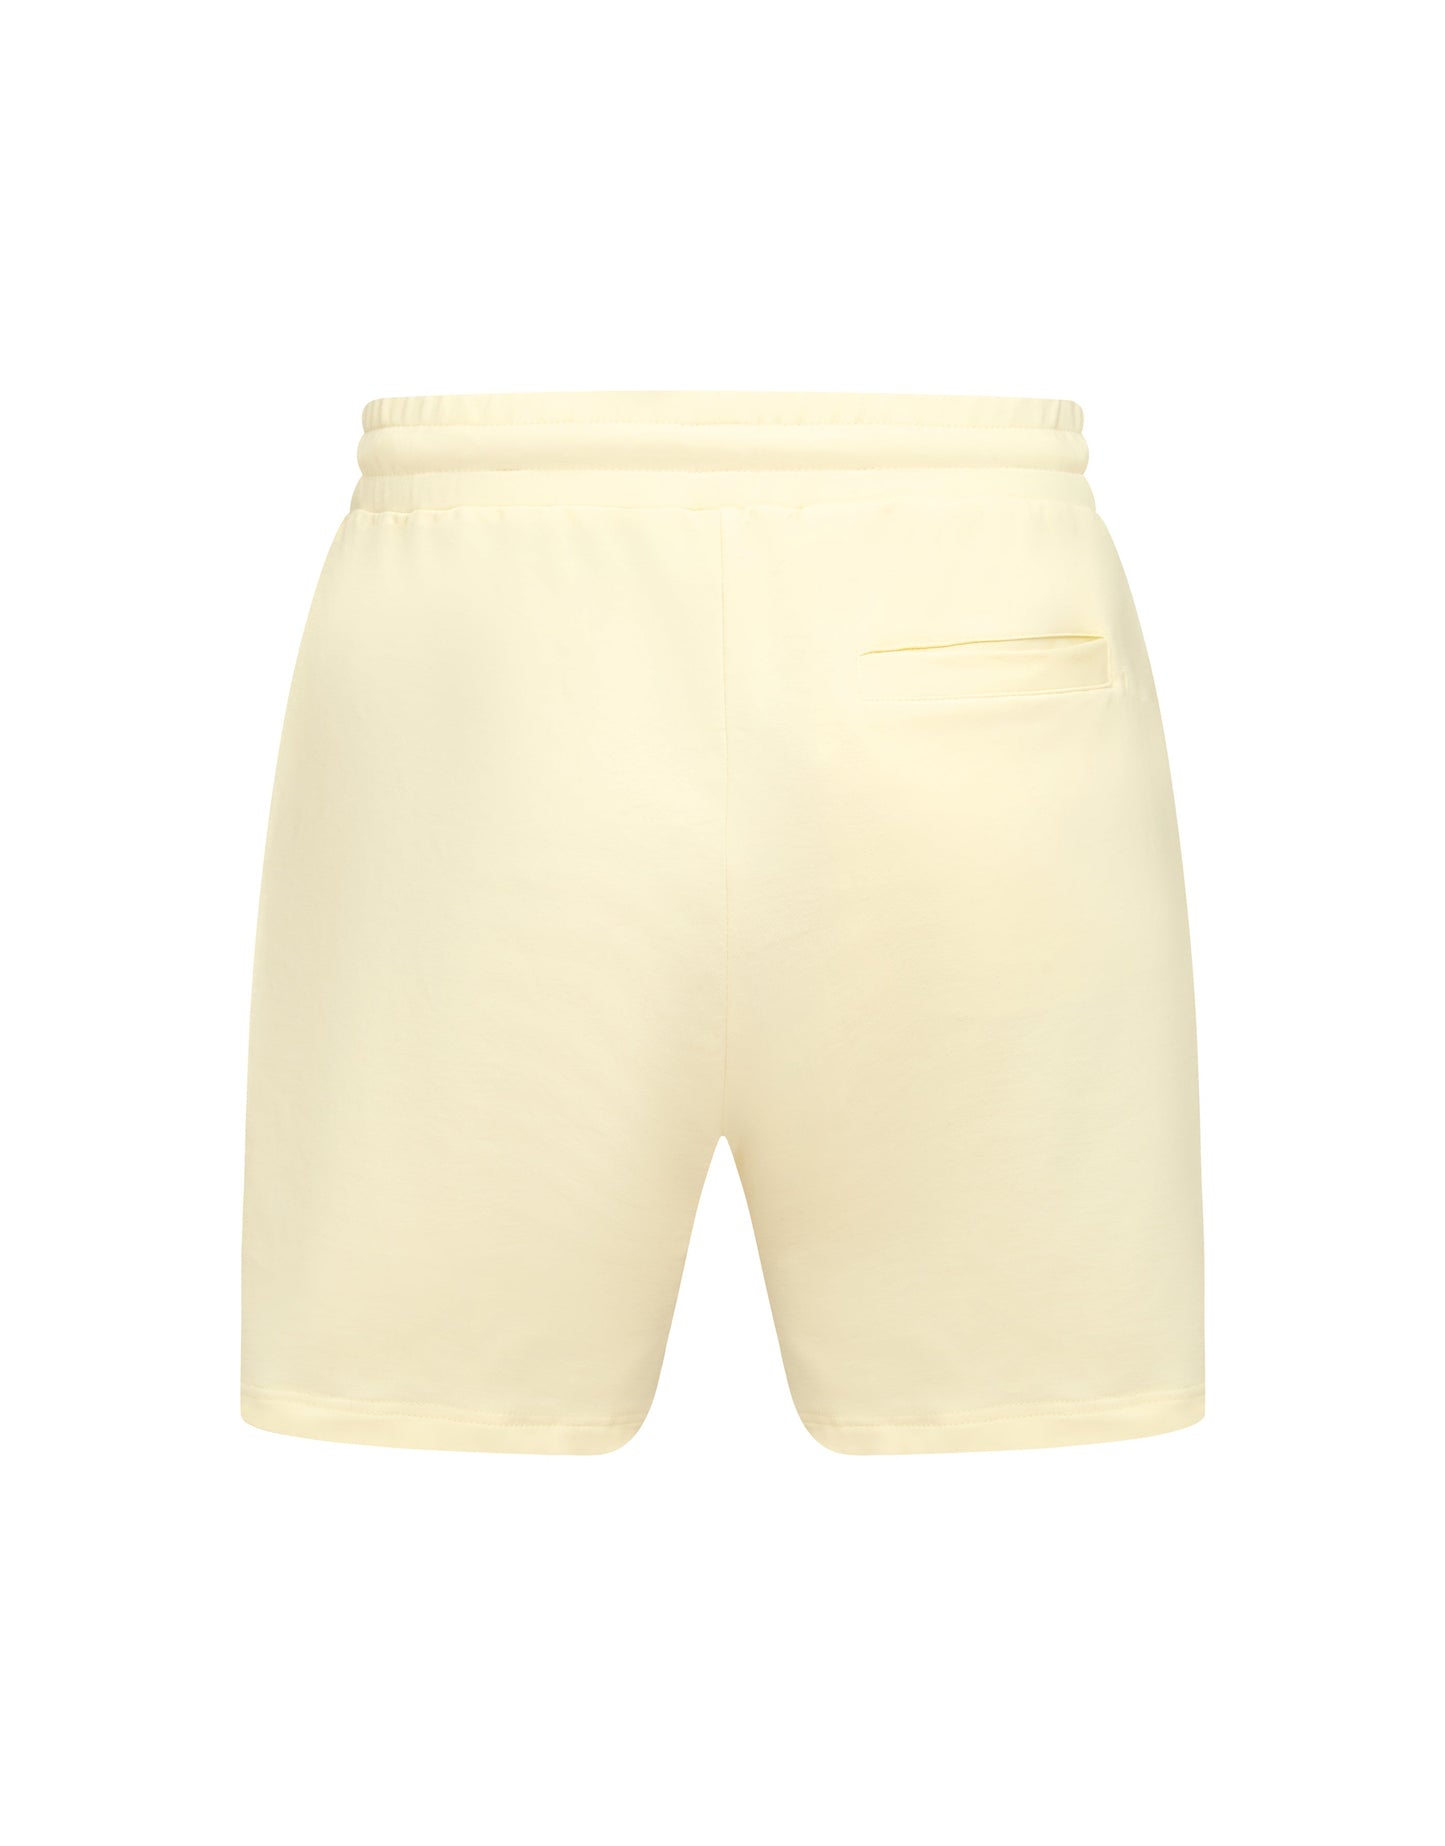 Mens Classic Shorts - Cream